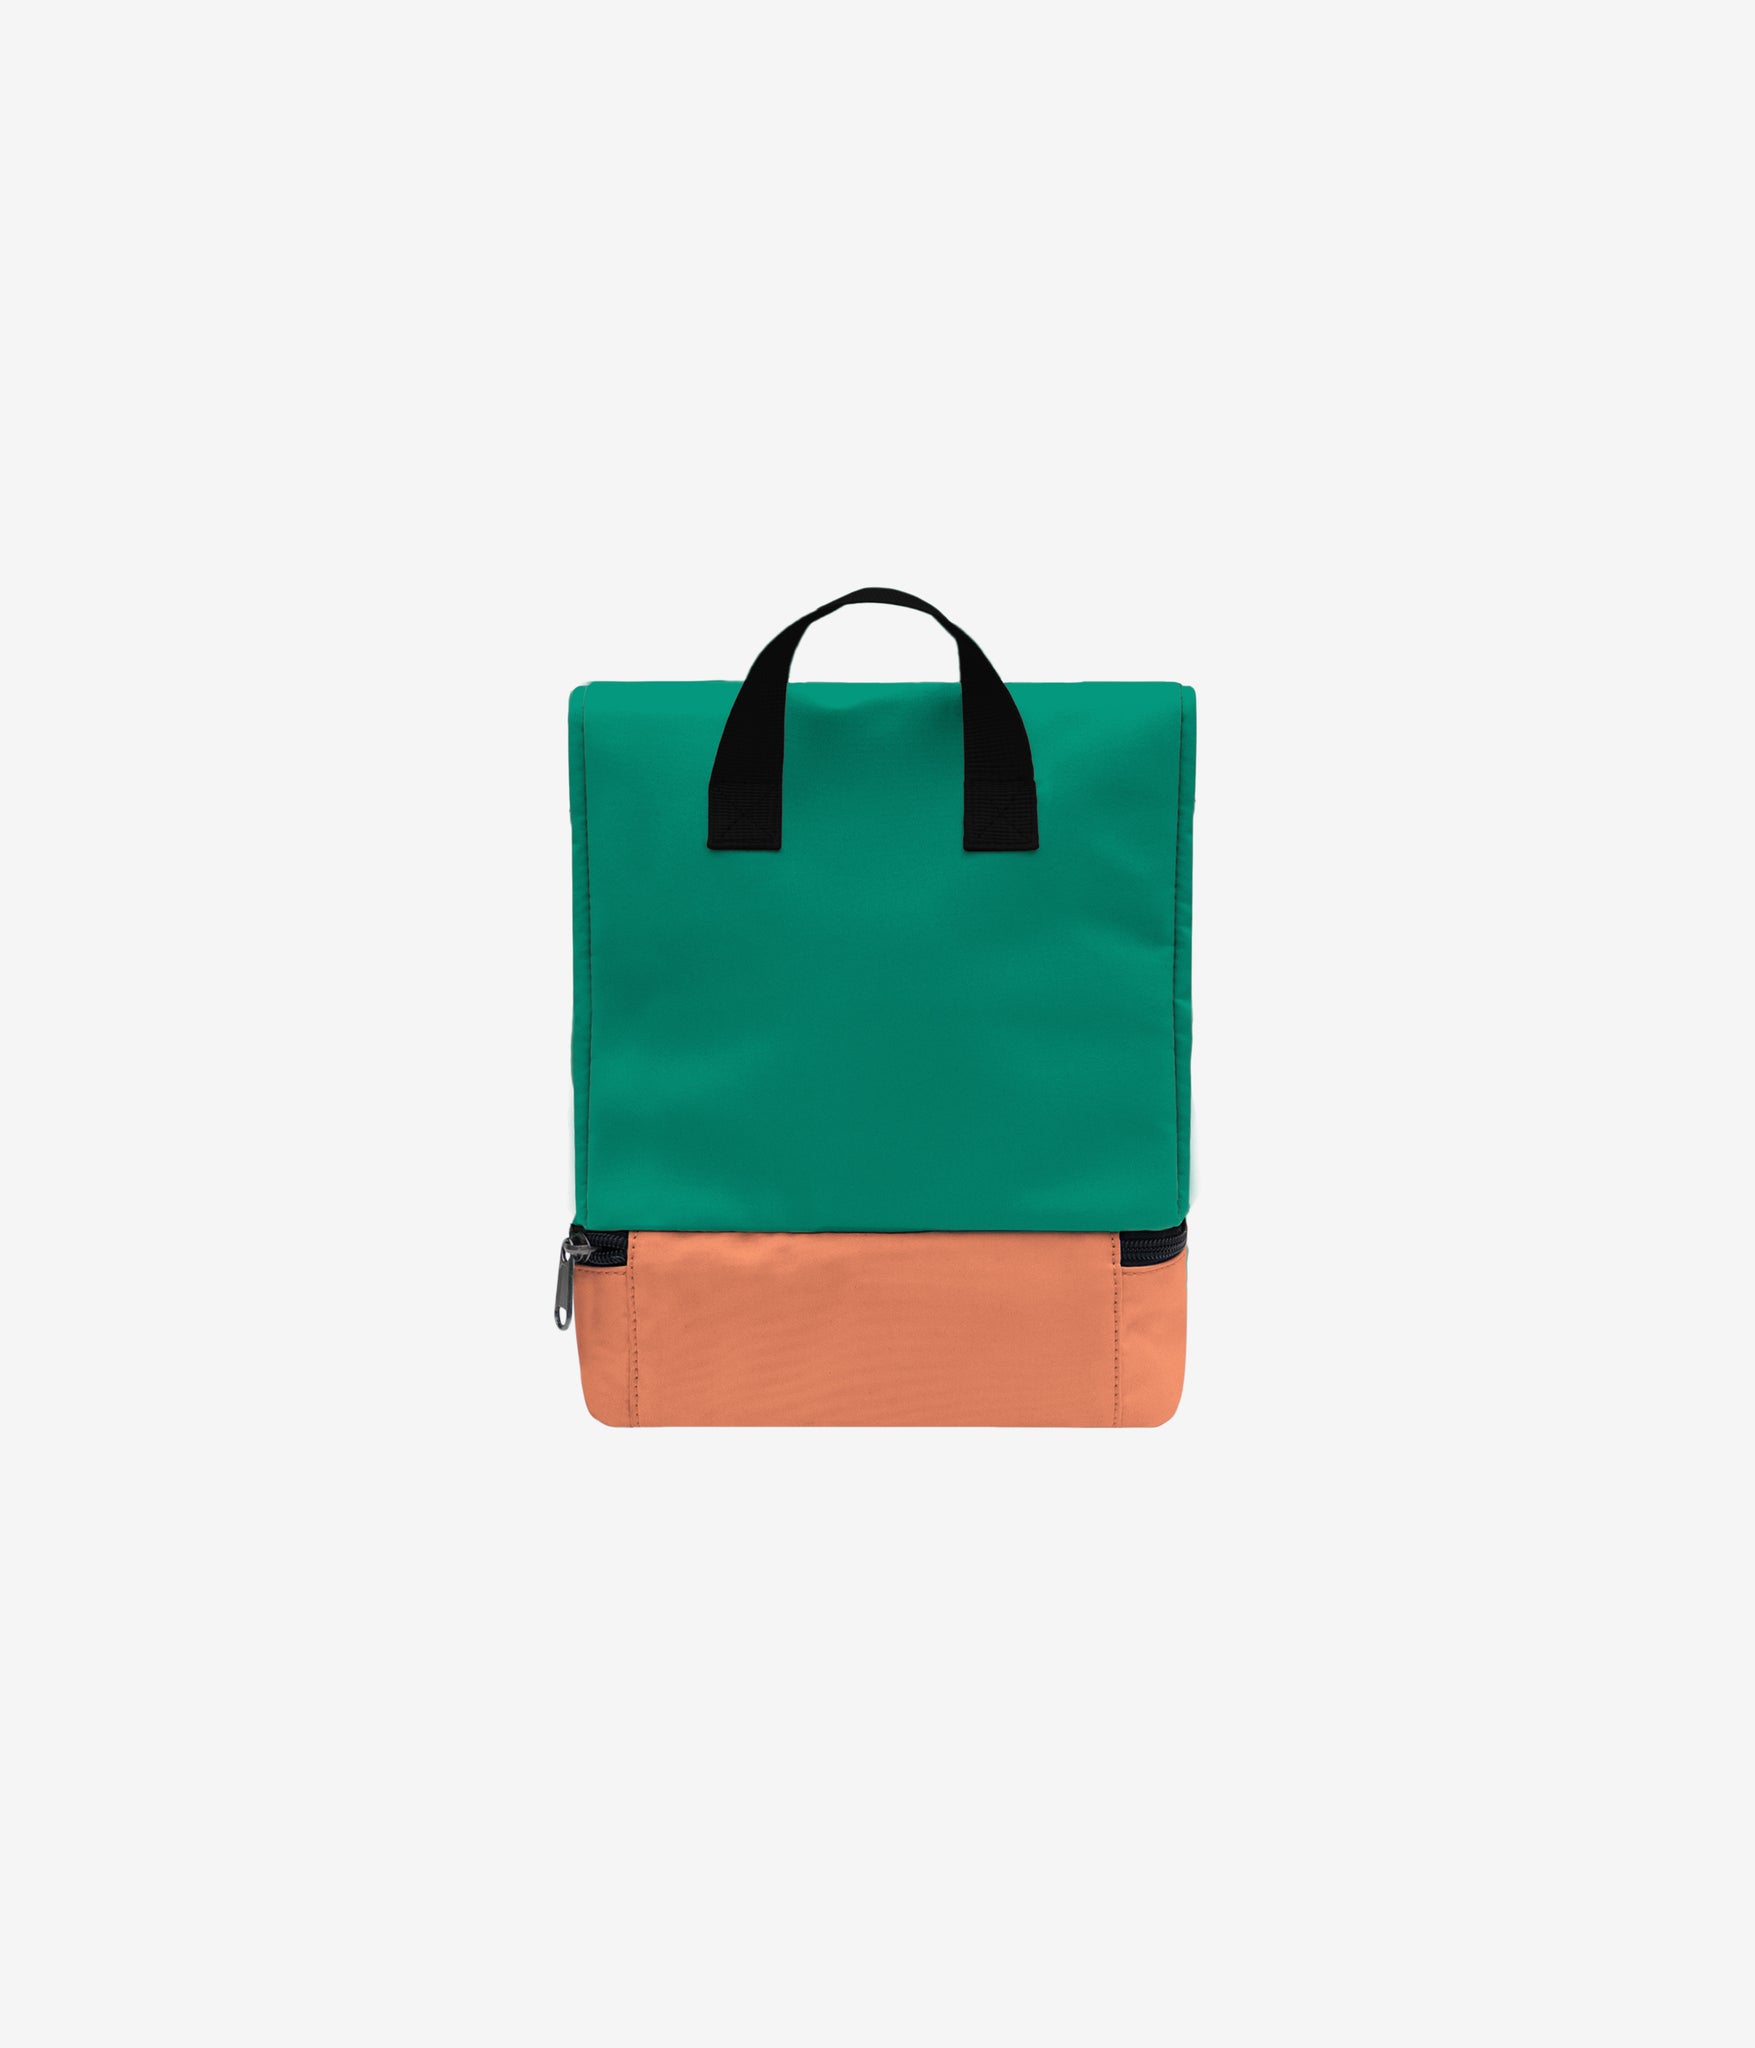 Colorblock Lunch Box - Emerald